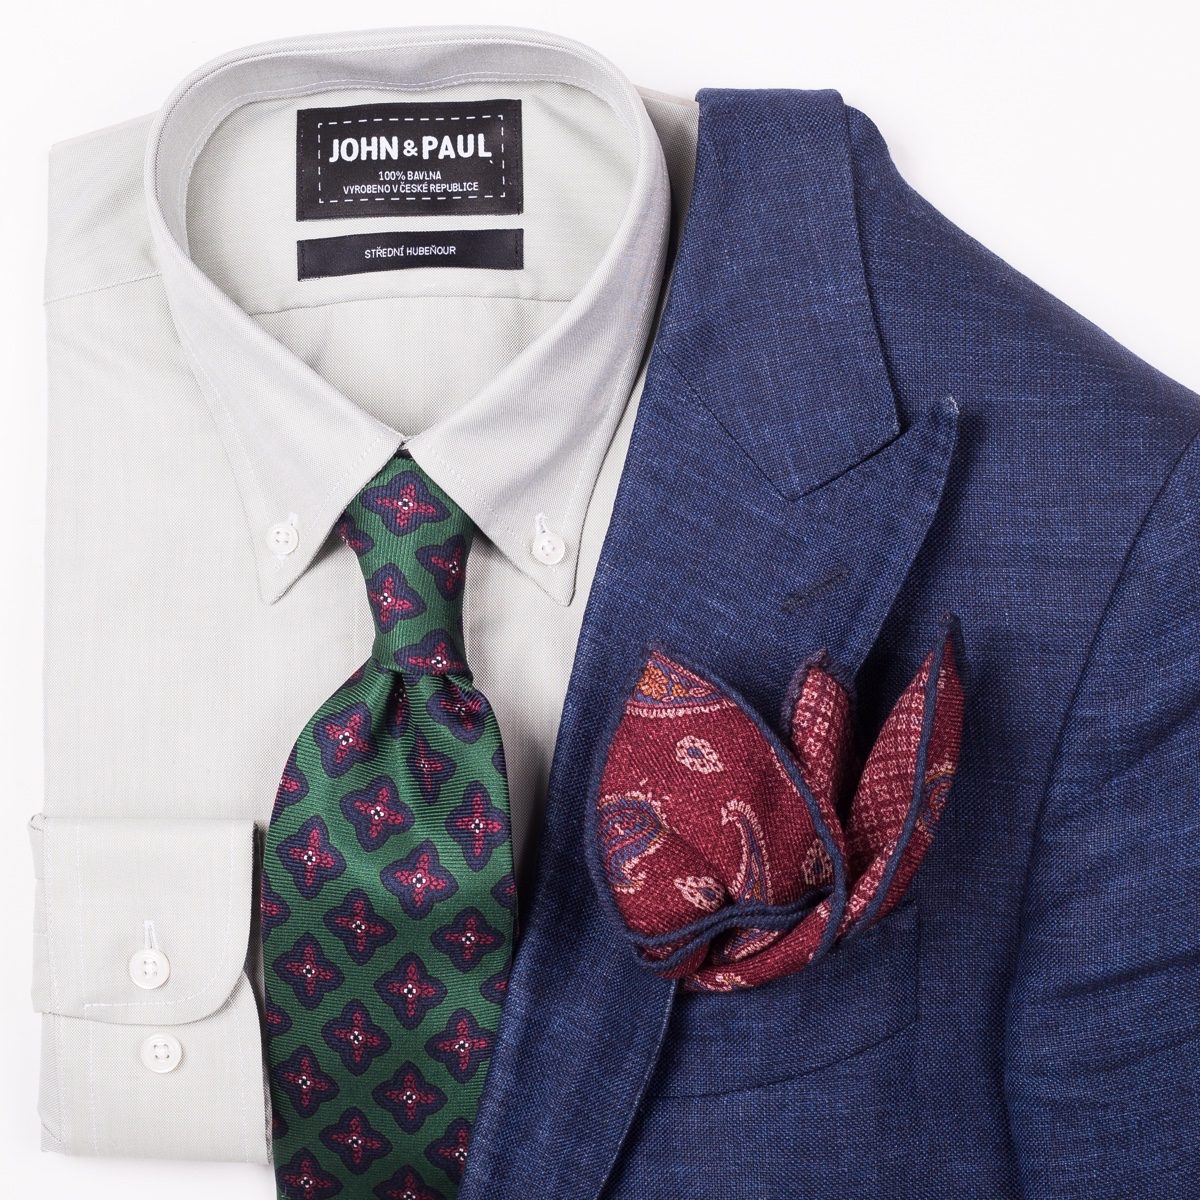 damage Absorb Tackle Gentleman Store - 5 idei cum să asortați cravata și batista